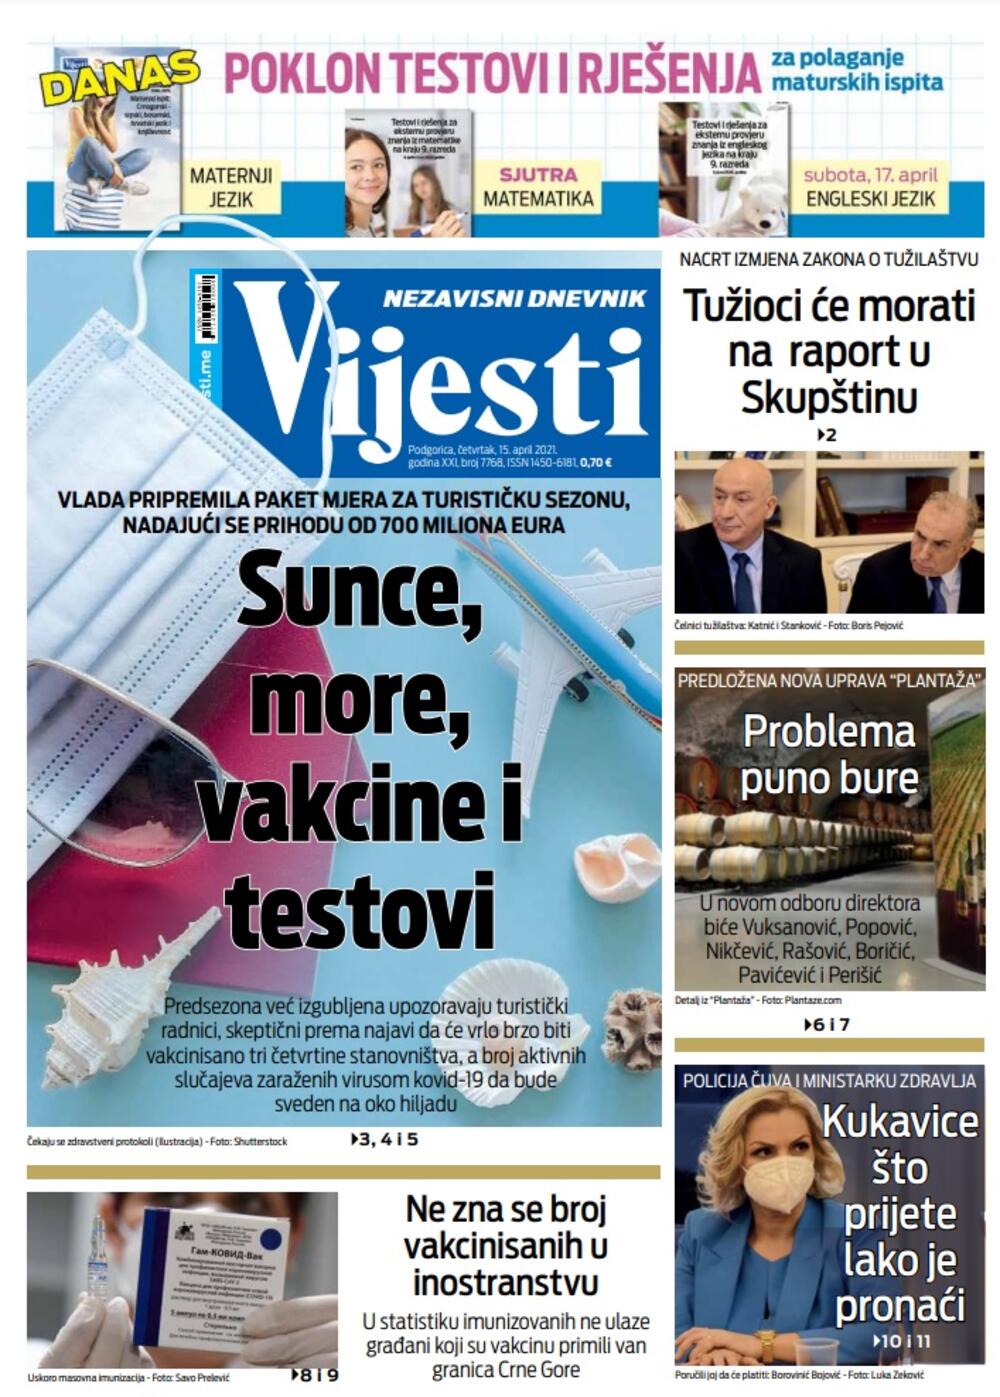 Naslovna strana "Vijesti" za 15. april 2021., Foto: Vijesti